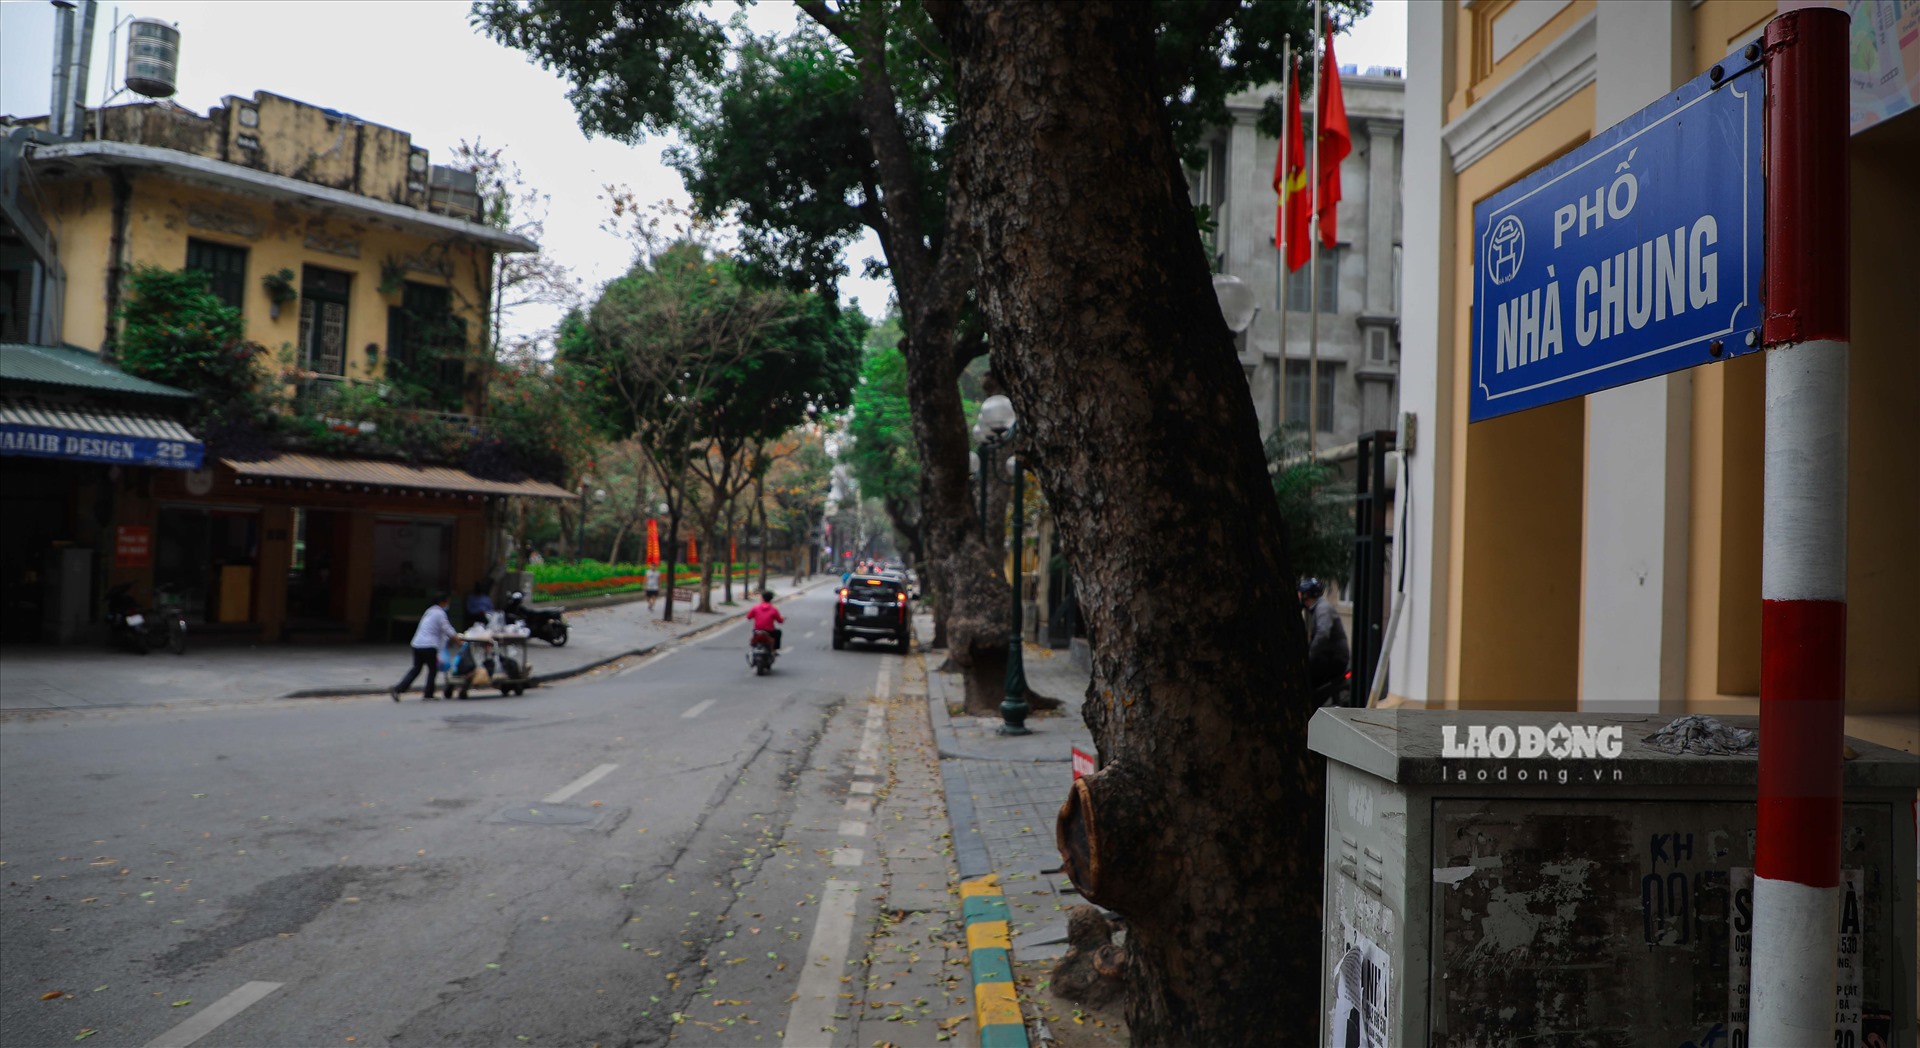 Tuy nhiên, theo khảo sát thực tế và thông tin trên 1 số trang tin bất động sản, giá đất tại nhiều tuyến phố nội thành Hà Nội cao gấp nhiều lần so với mức niêm yết của UBND. Dẫn đầu danh sách những tuyến phố đắt nhất thuộc đang là phố Nhà Chung (970 triệu/m2).